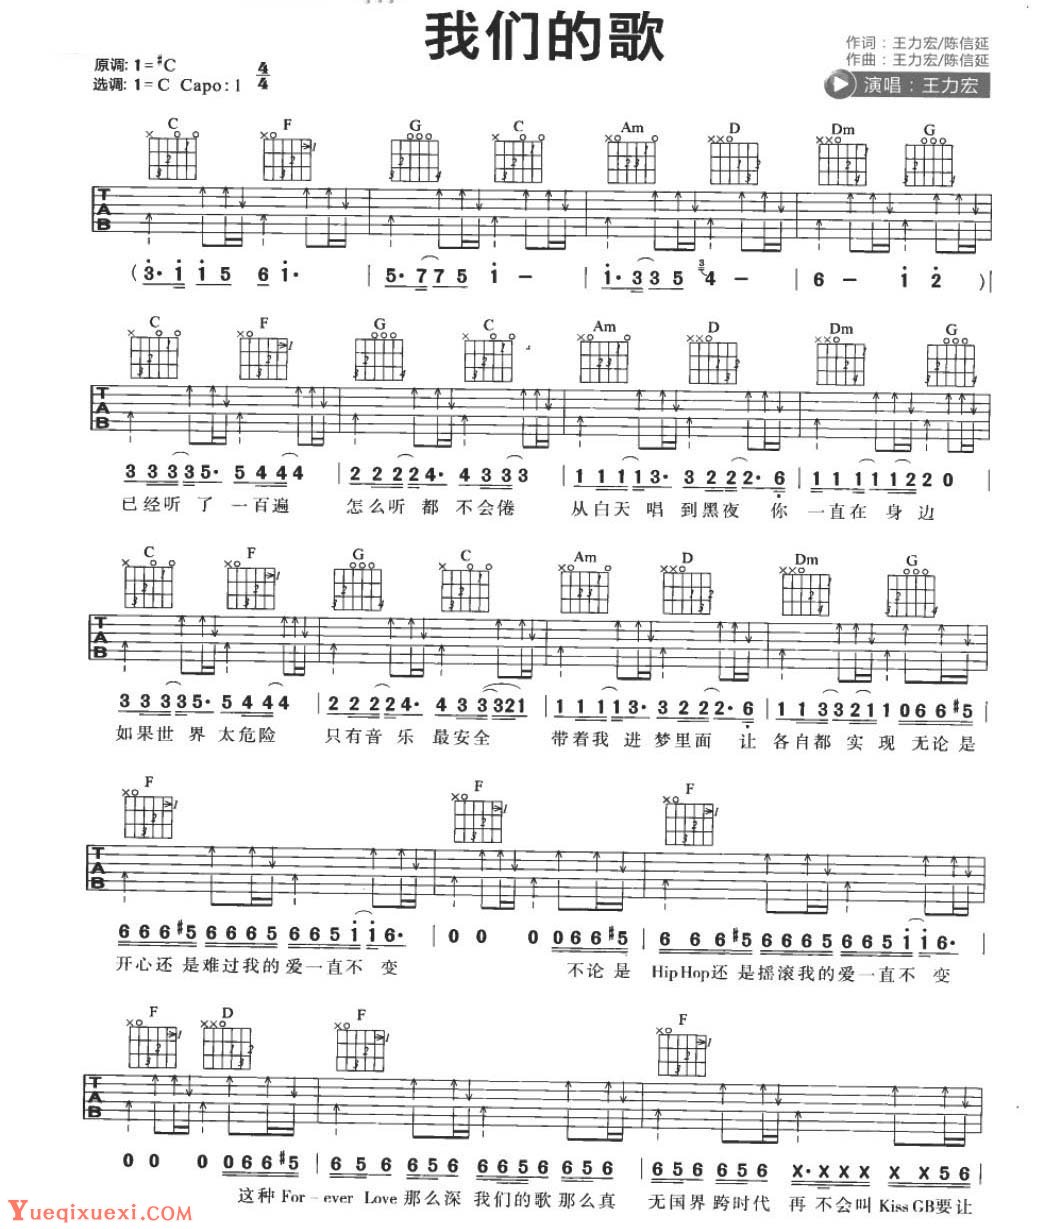 吉他弹唱流行歌曲《手放开》C大调/四四拍/分解和弦-指弹吉他谱 - 乐器学习网